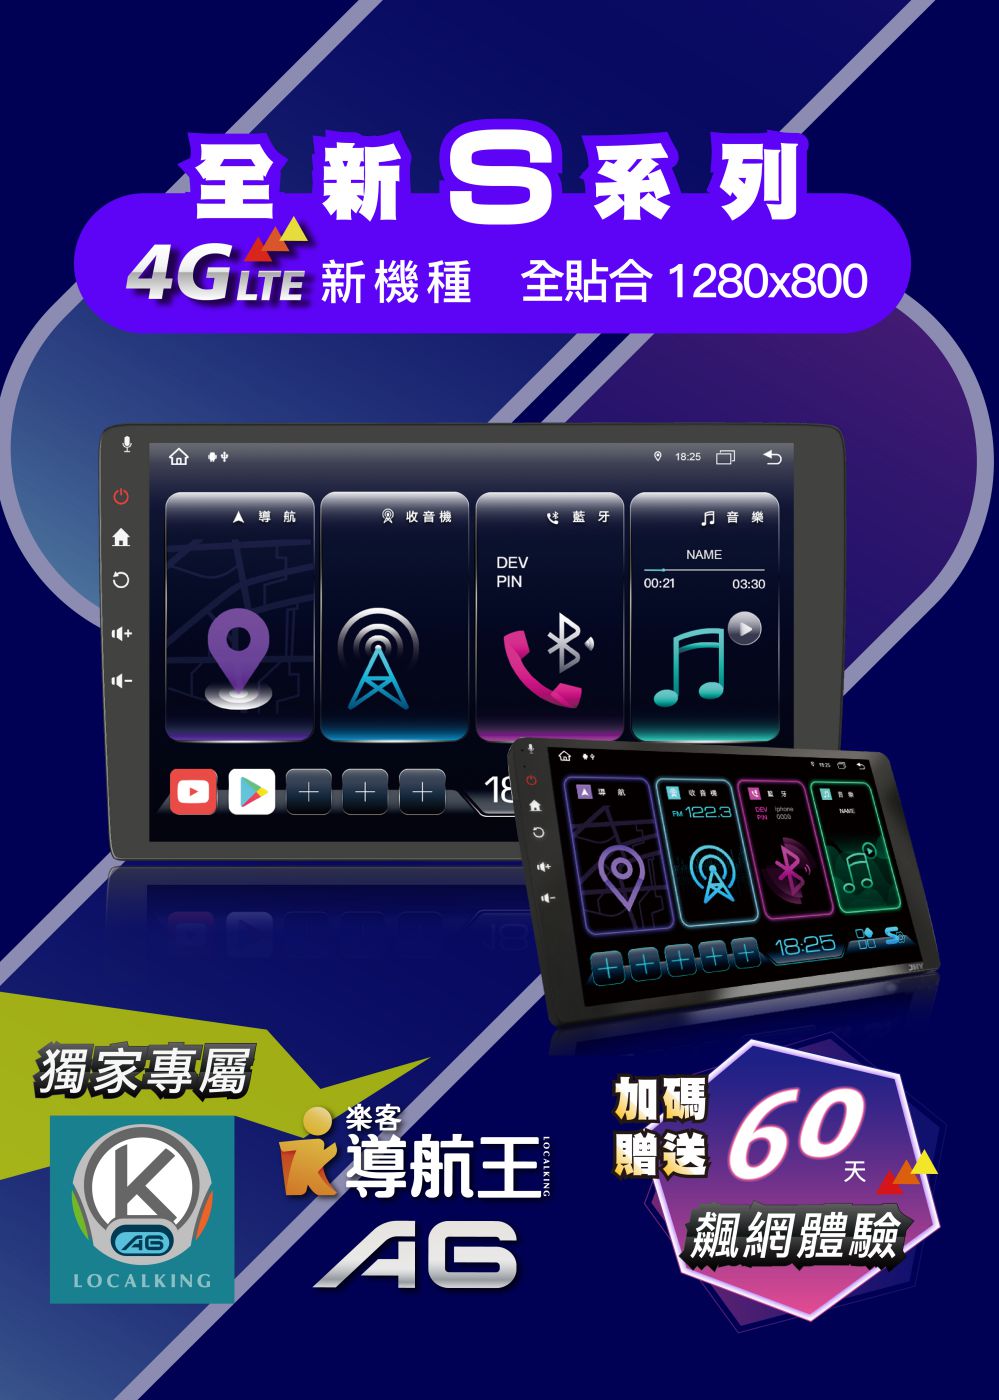 S 4G系列，高解析全貼合加大觸控螢幕，WXGA1280x800